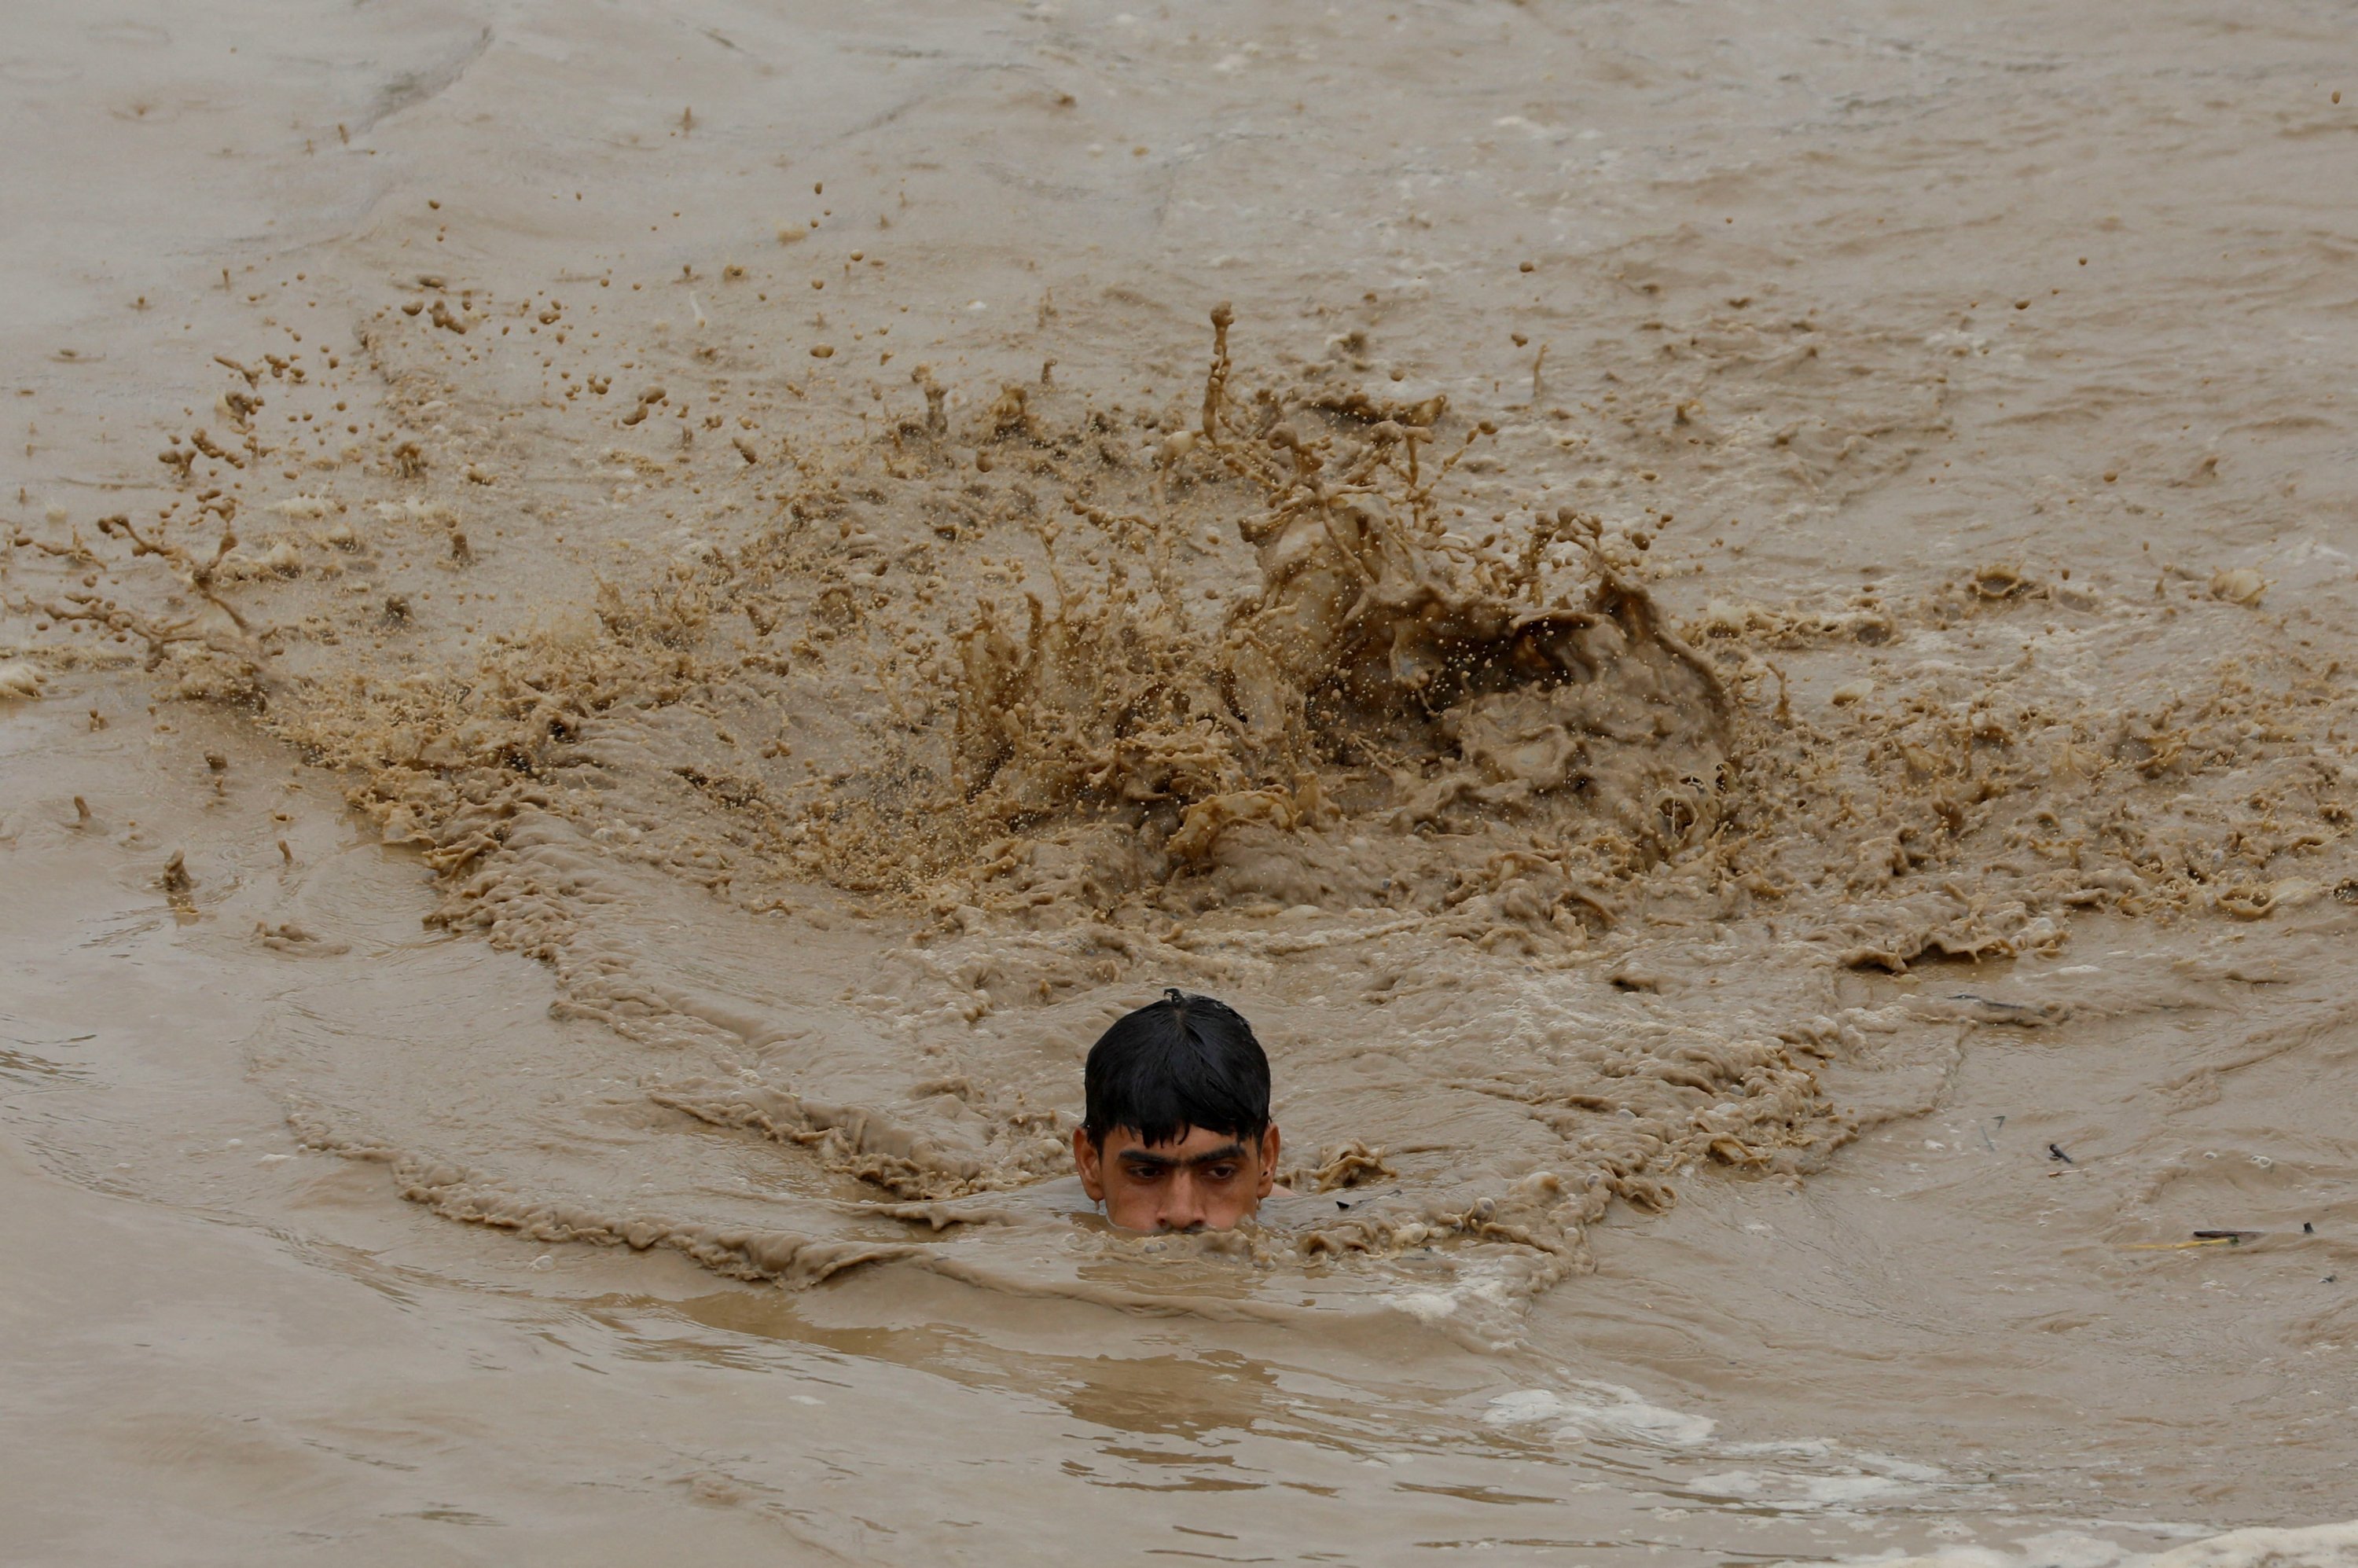 Seorang pria berenang di air banjir saat menuju tempat yang lebih tinggi, Charsadda, Pakistan, 27 Agustus 2022. (Foto Reuters)